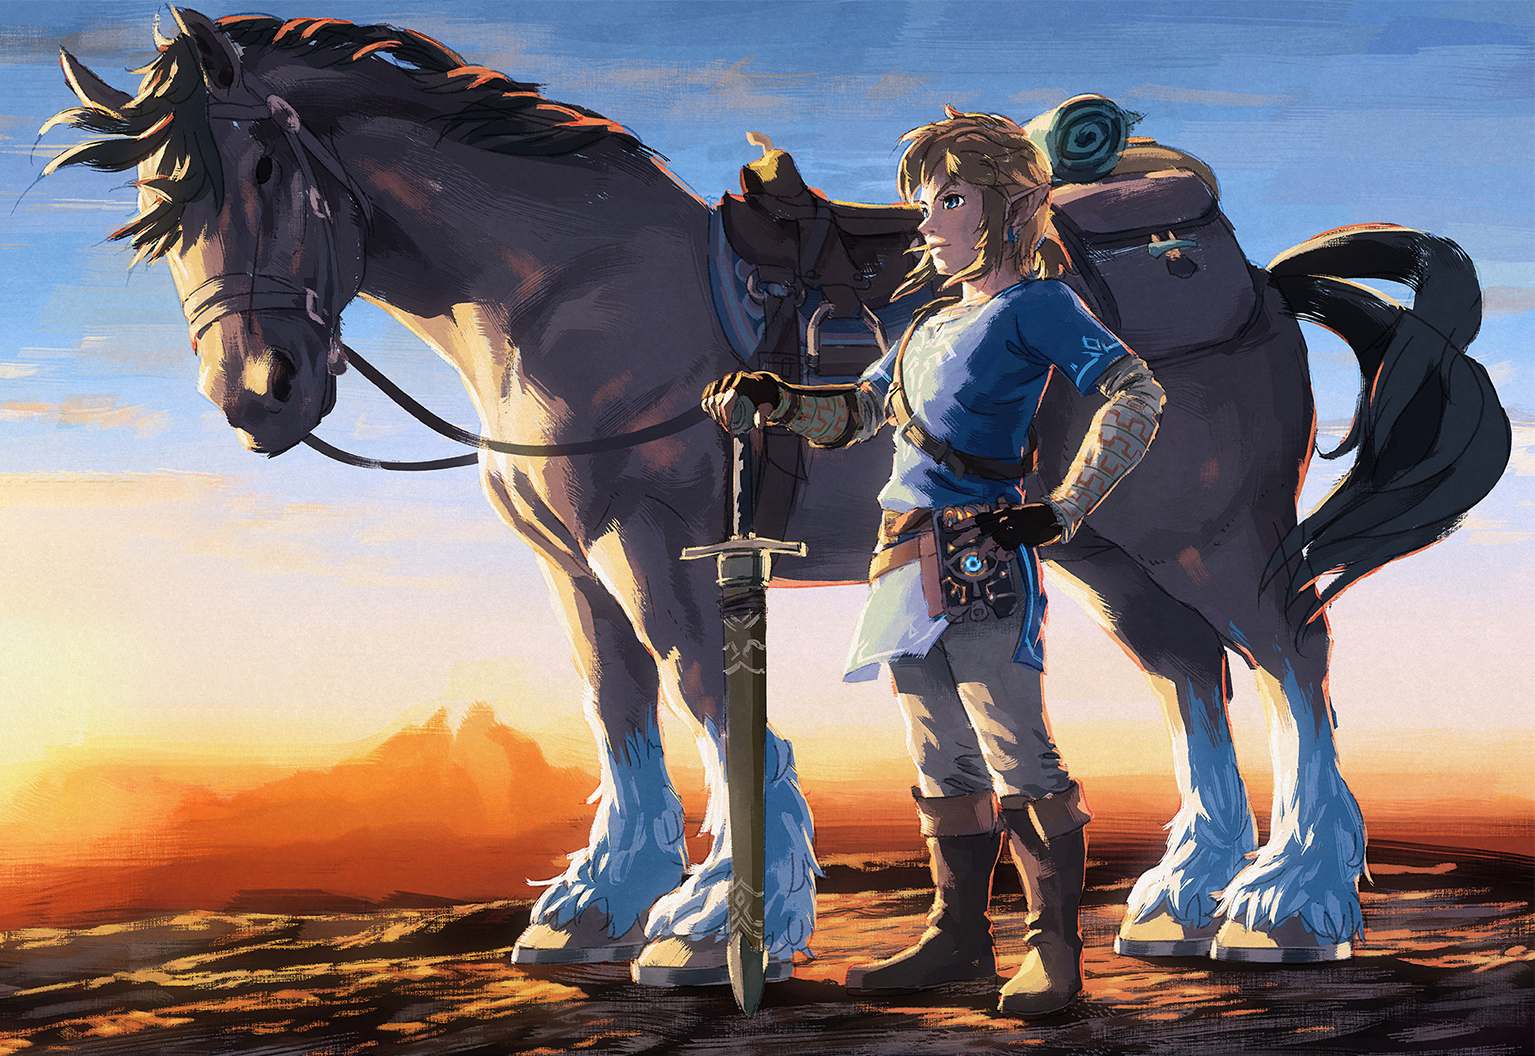 Major The Legend of Zelda Movie Update Raises Concerns Among Fans - image 1